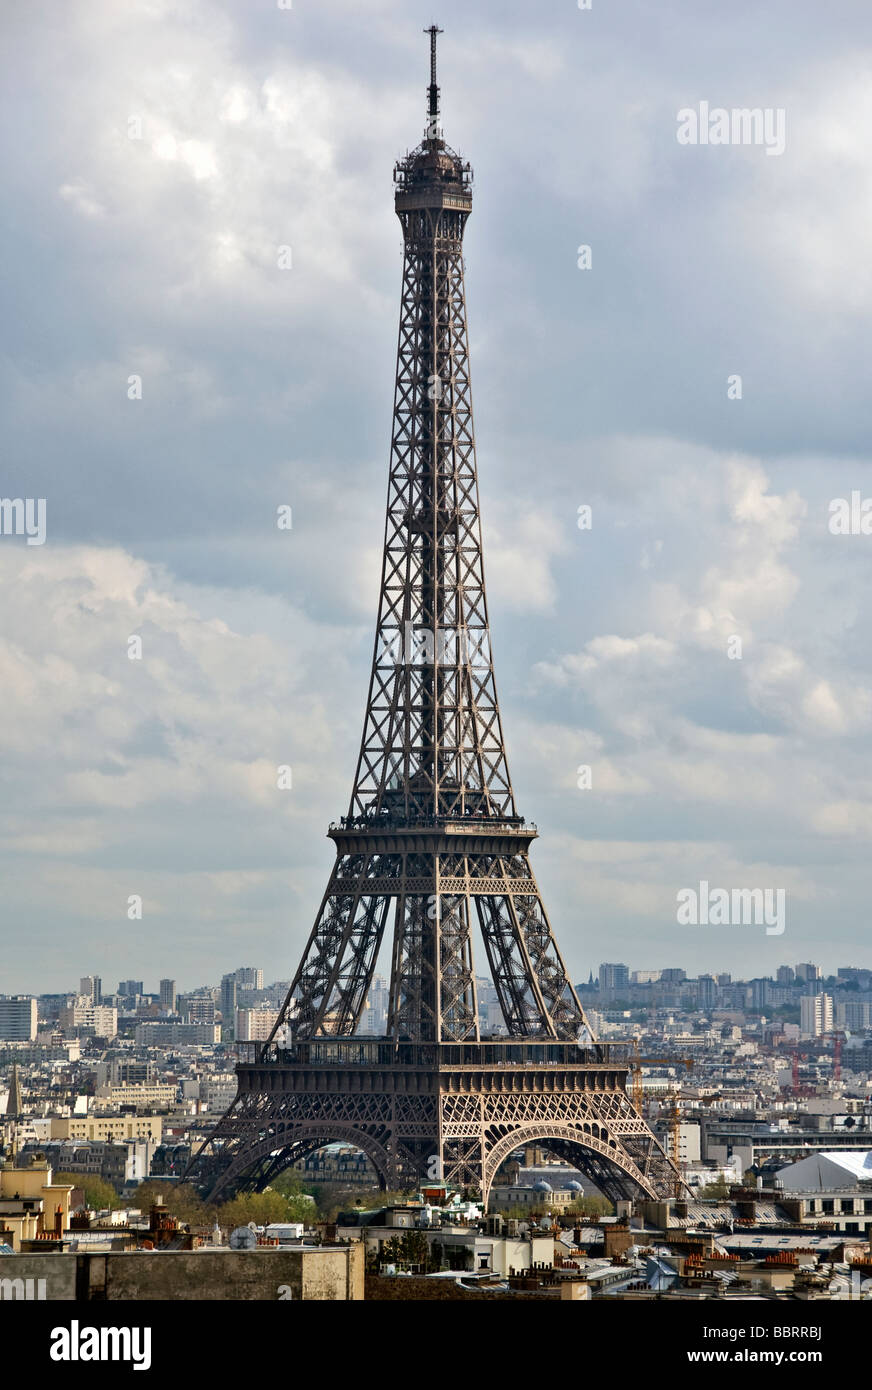 Paris Champ-de-Mars Eiffel Tower Grande Dame whole building cloudy overcast sky cityscape Stock Photo